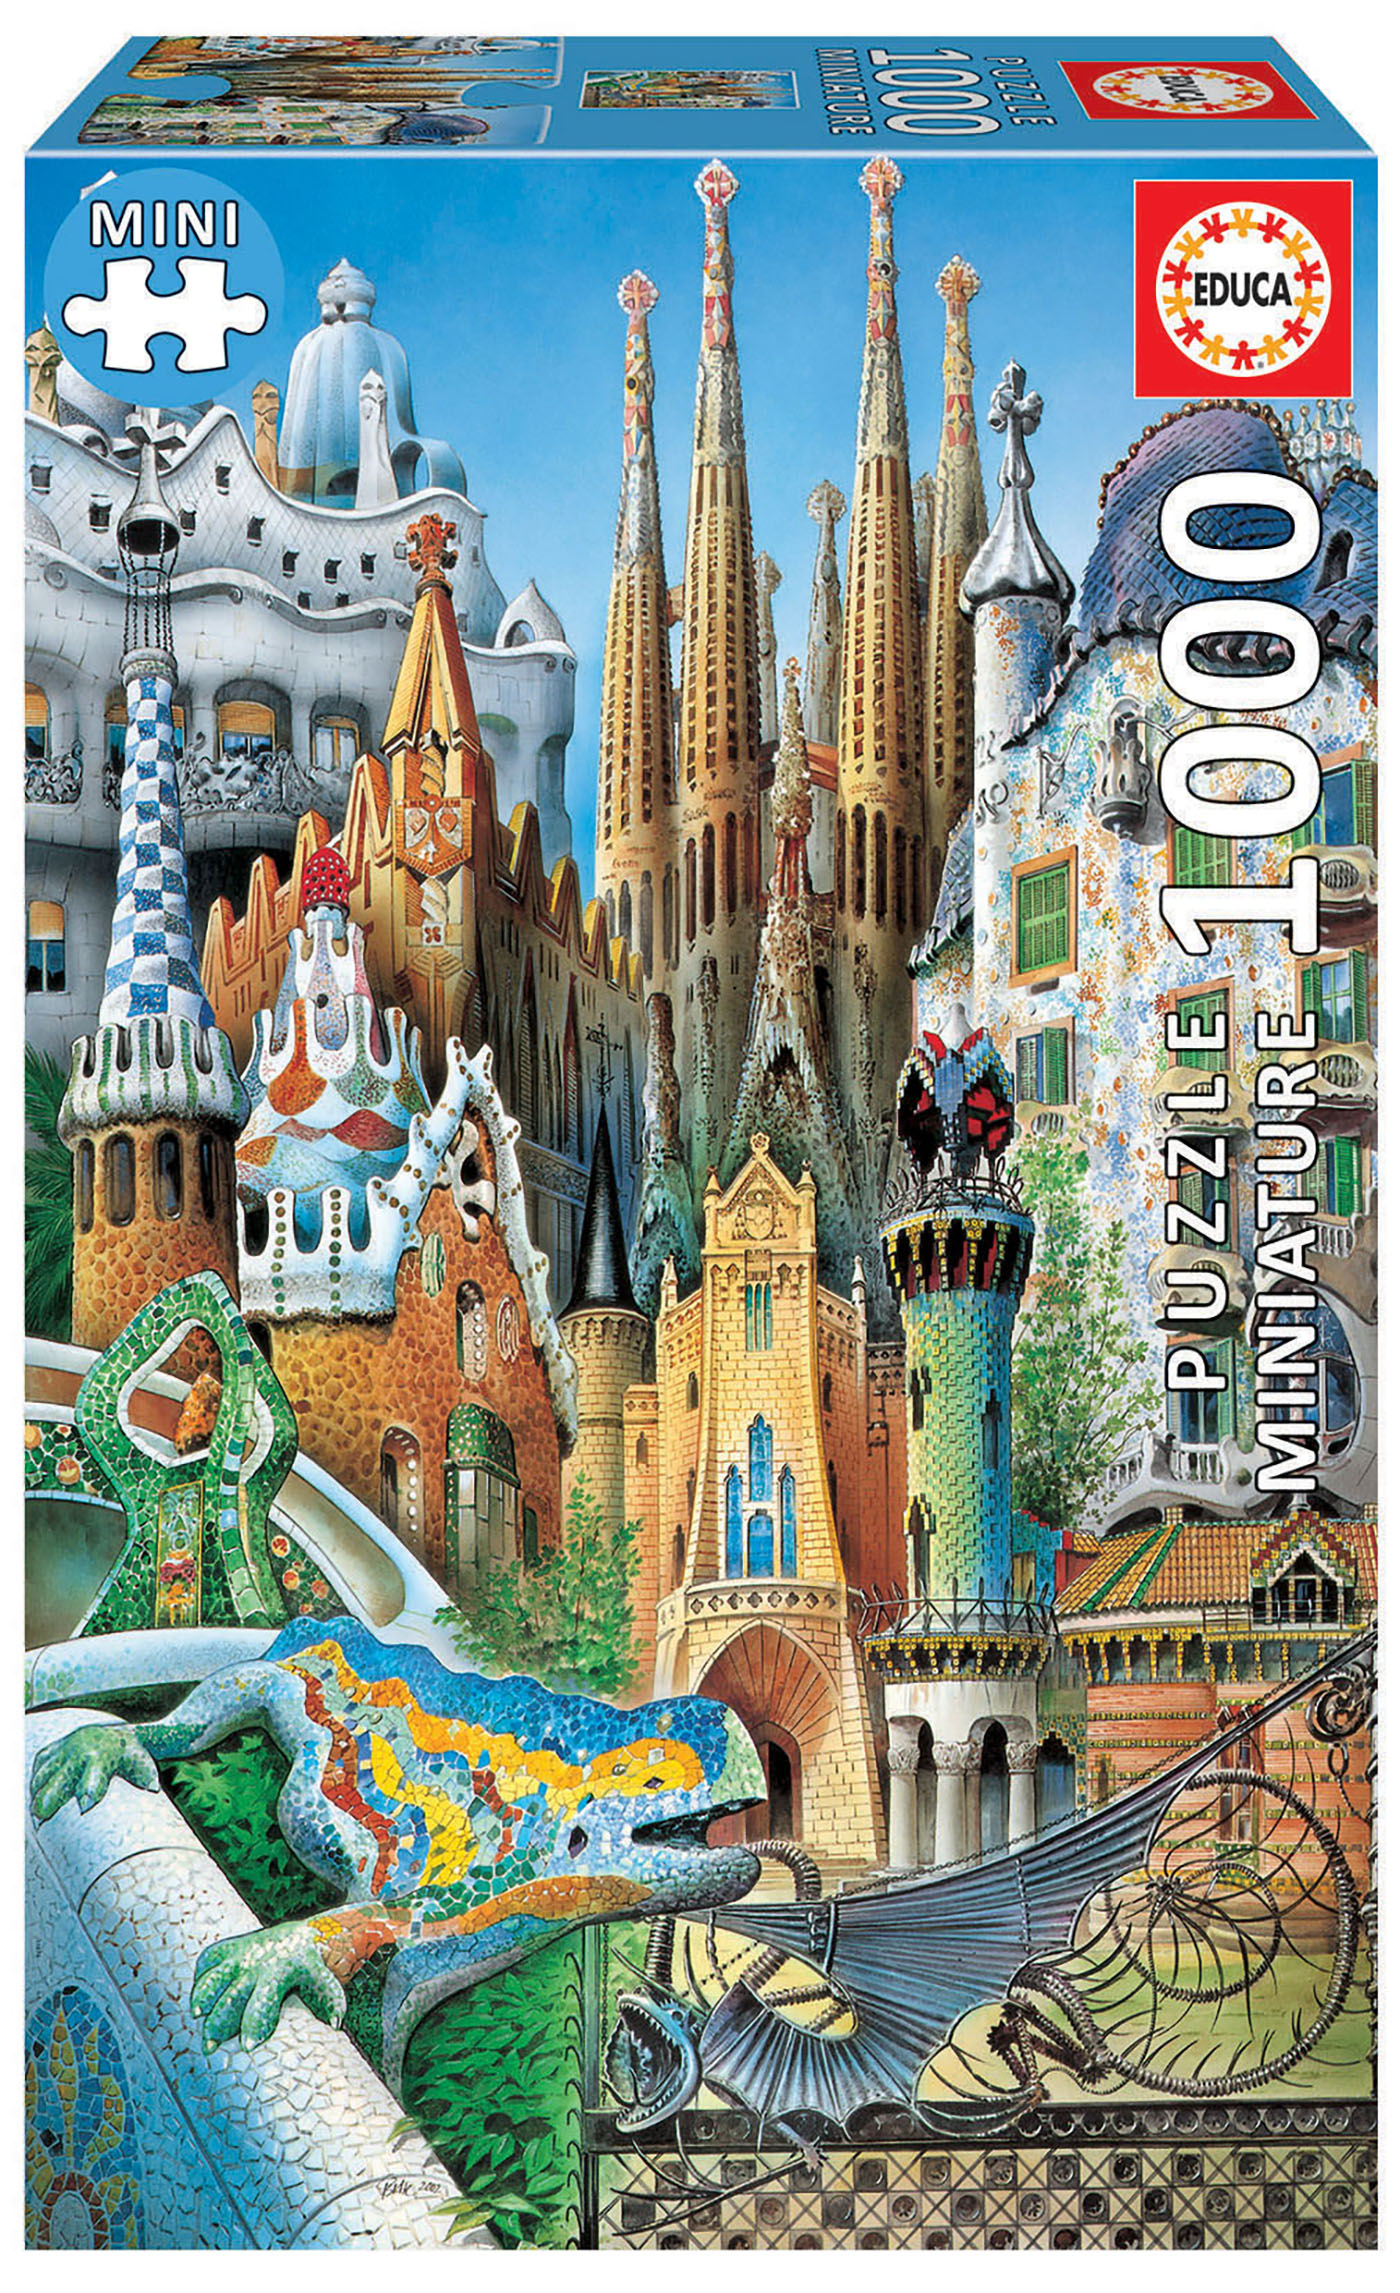 1000 Gaudí collage “Miniature”